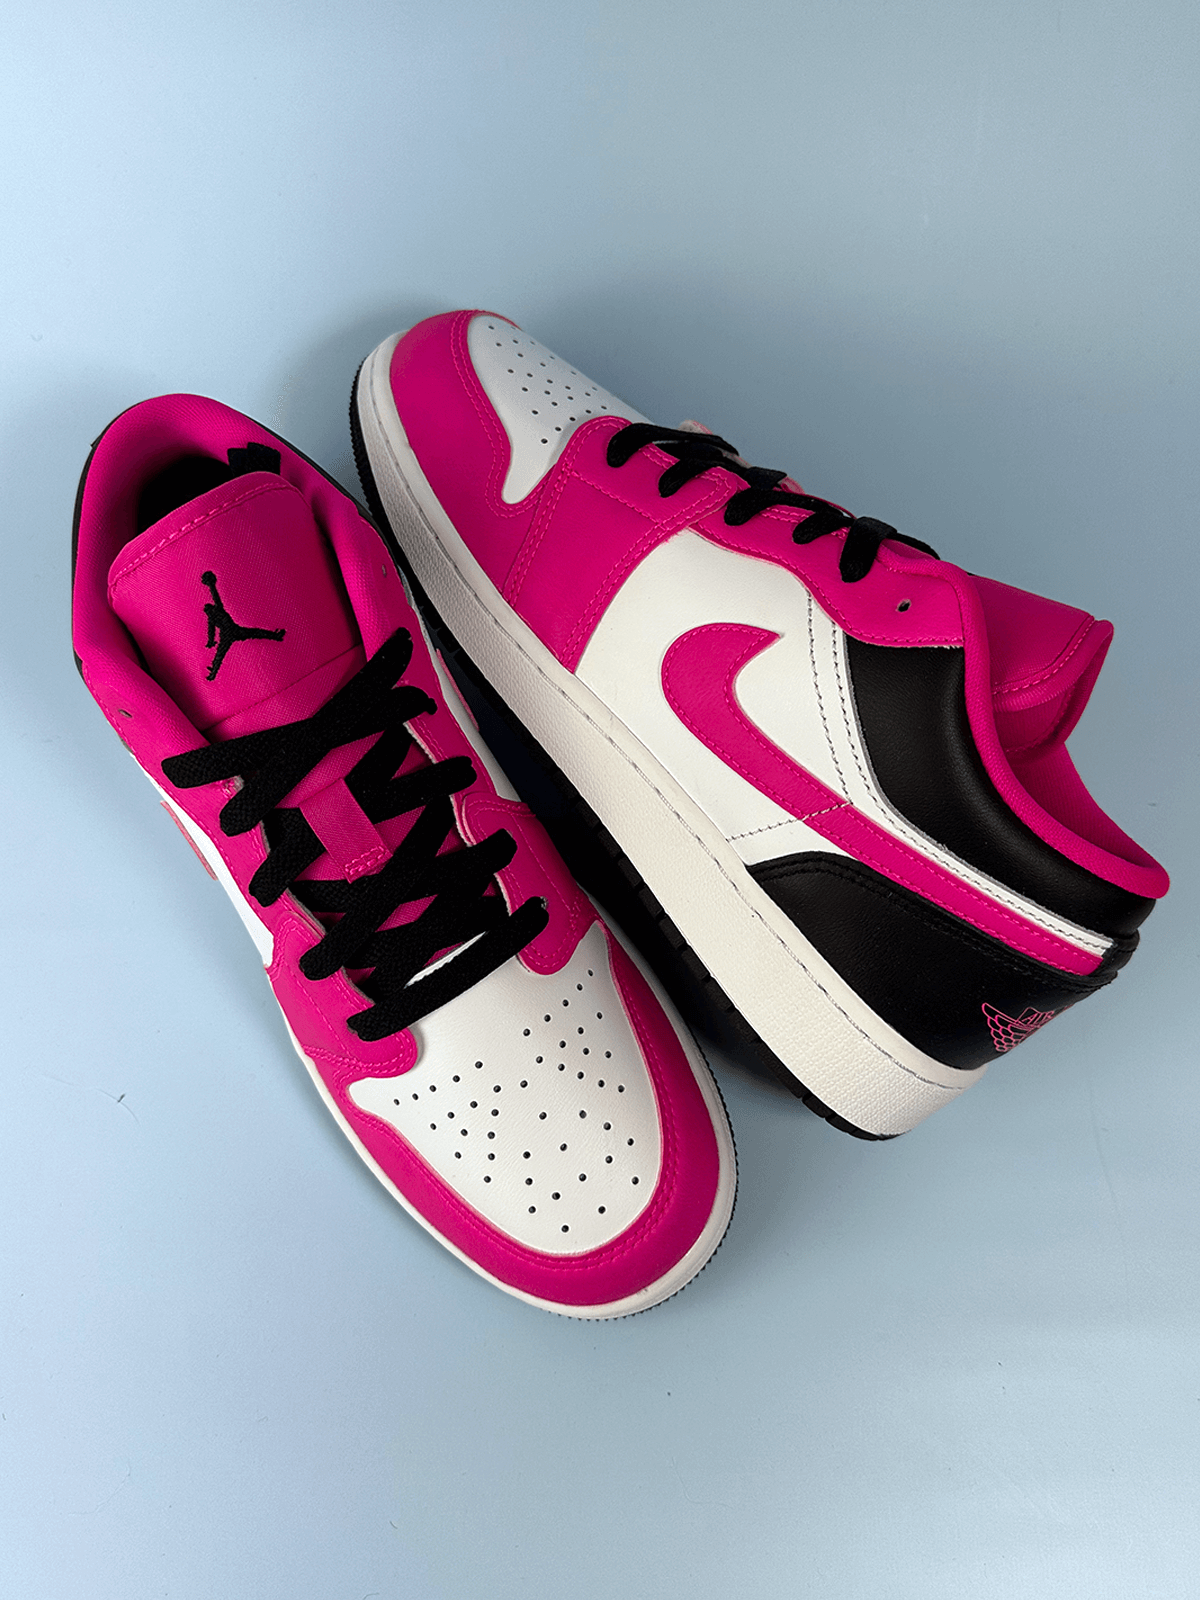 Jordan 1 Low Fierce Pink